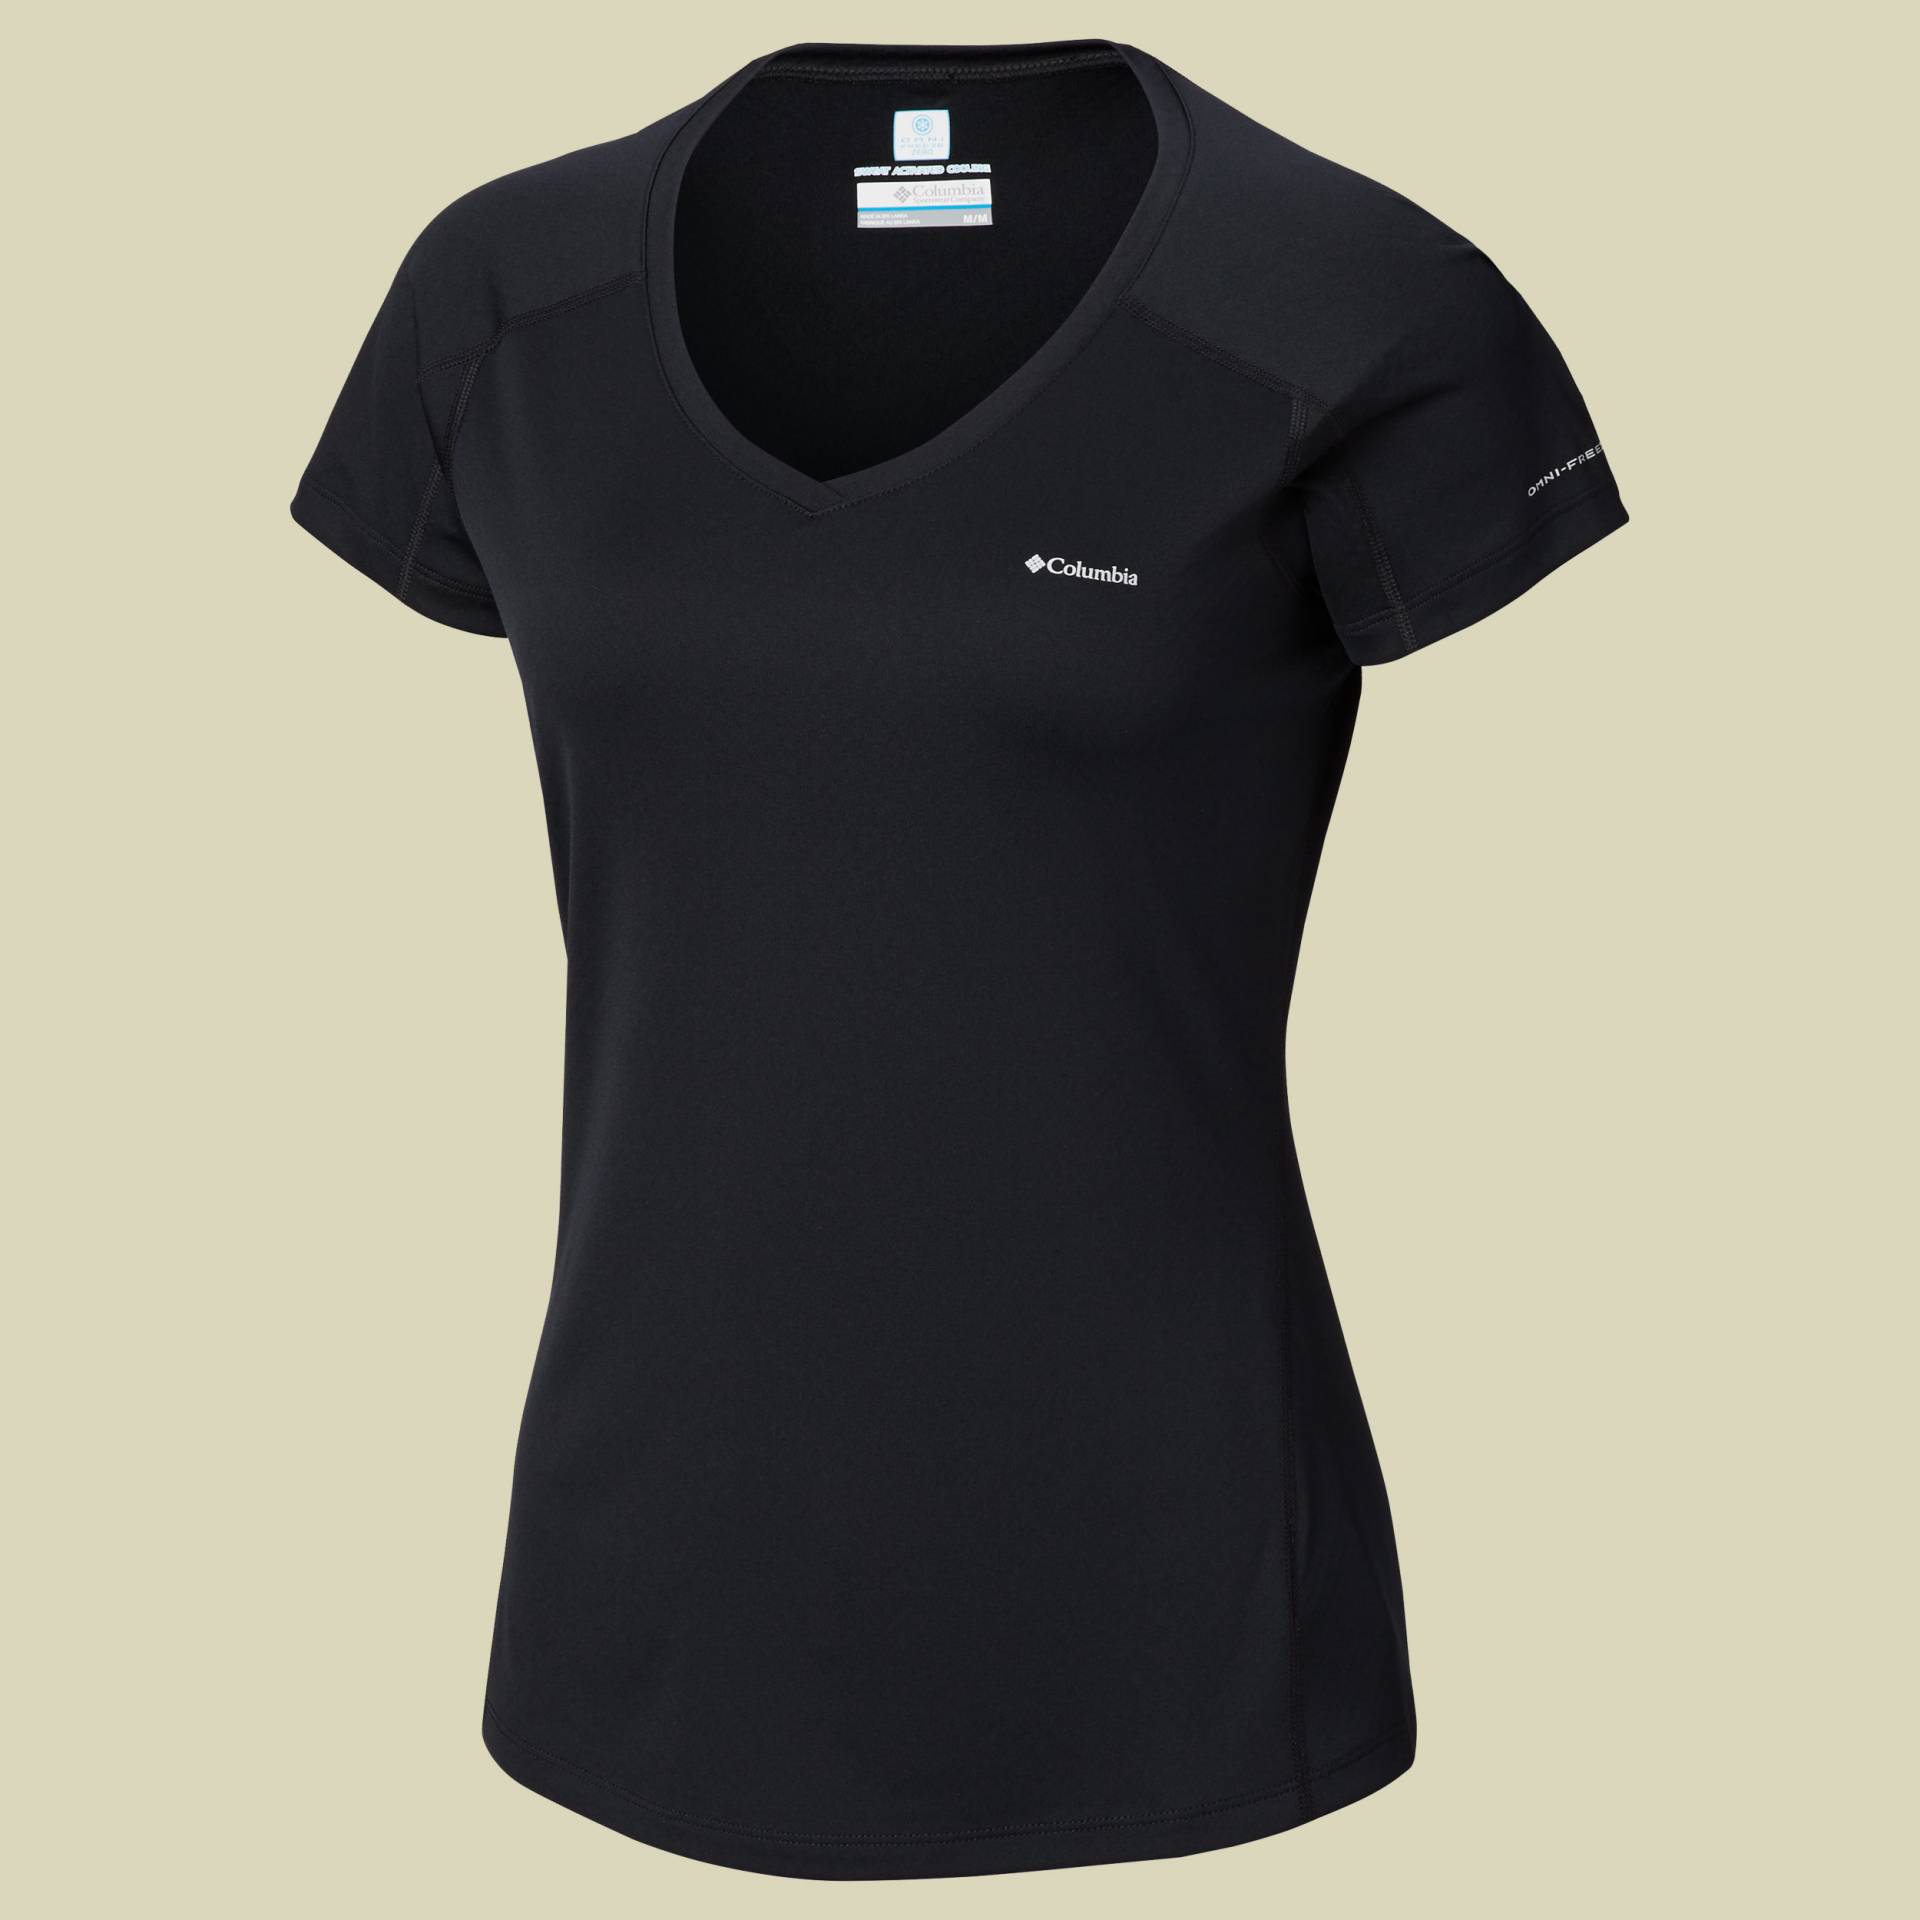 Zero Rules Short Sleeve Shirt Women Größe XL Farbe black von Columbia